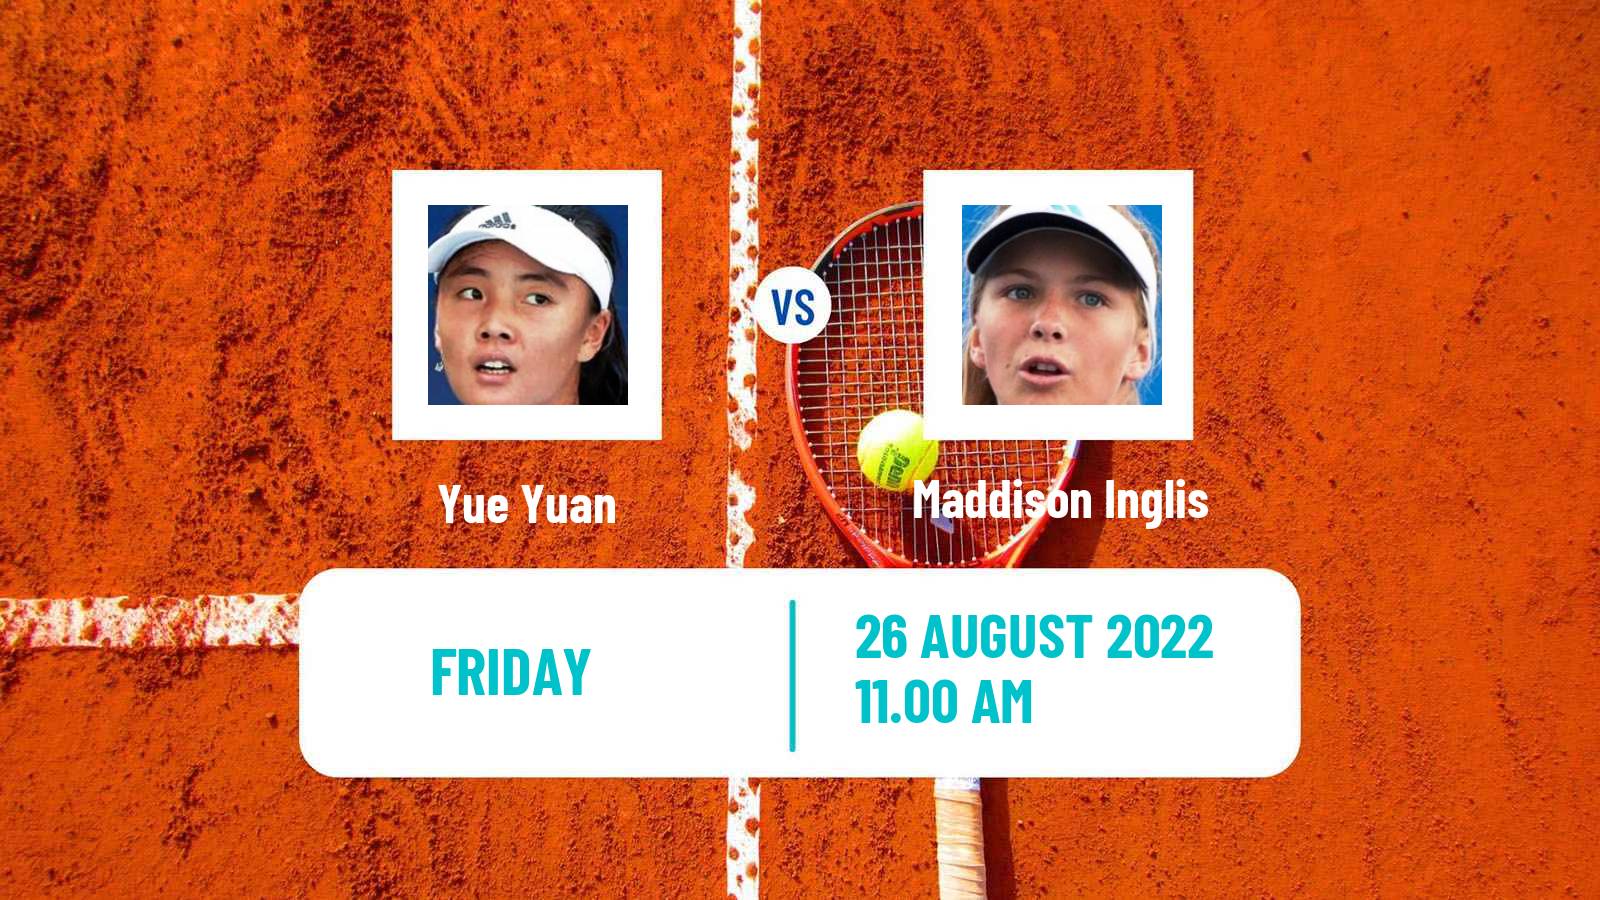 Tennis WTA US Open Yue Yuan - Maddison Inglis